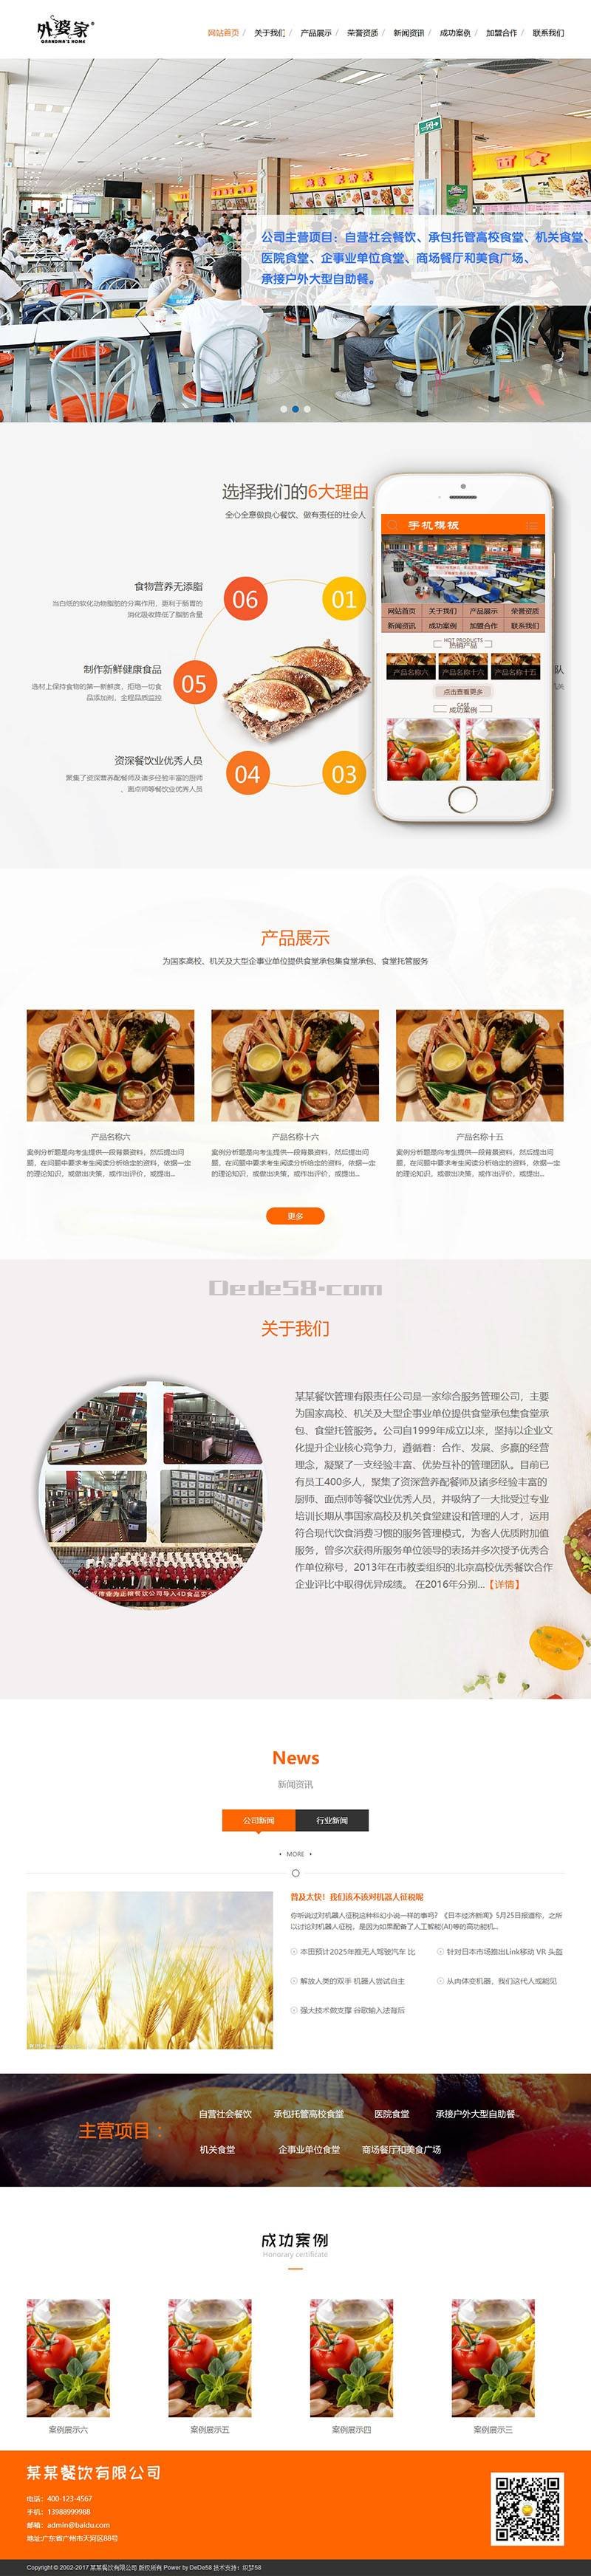 食堂承包餐饮服务管理类网站织梦模板(带手机端) 第1张